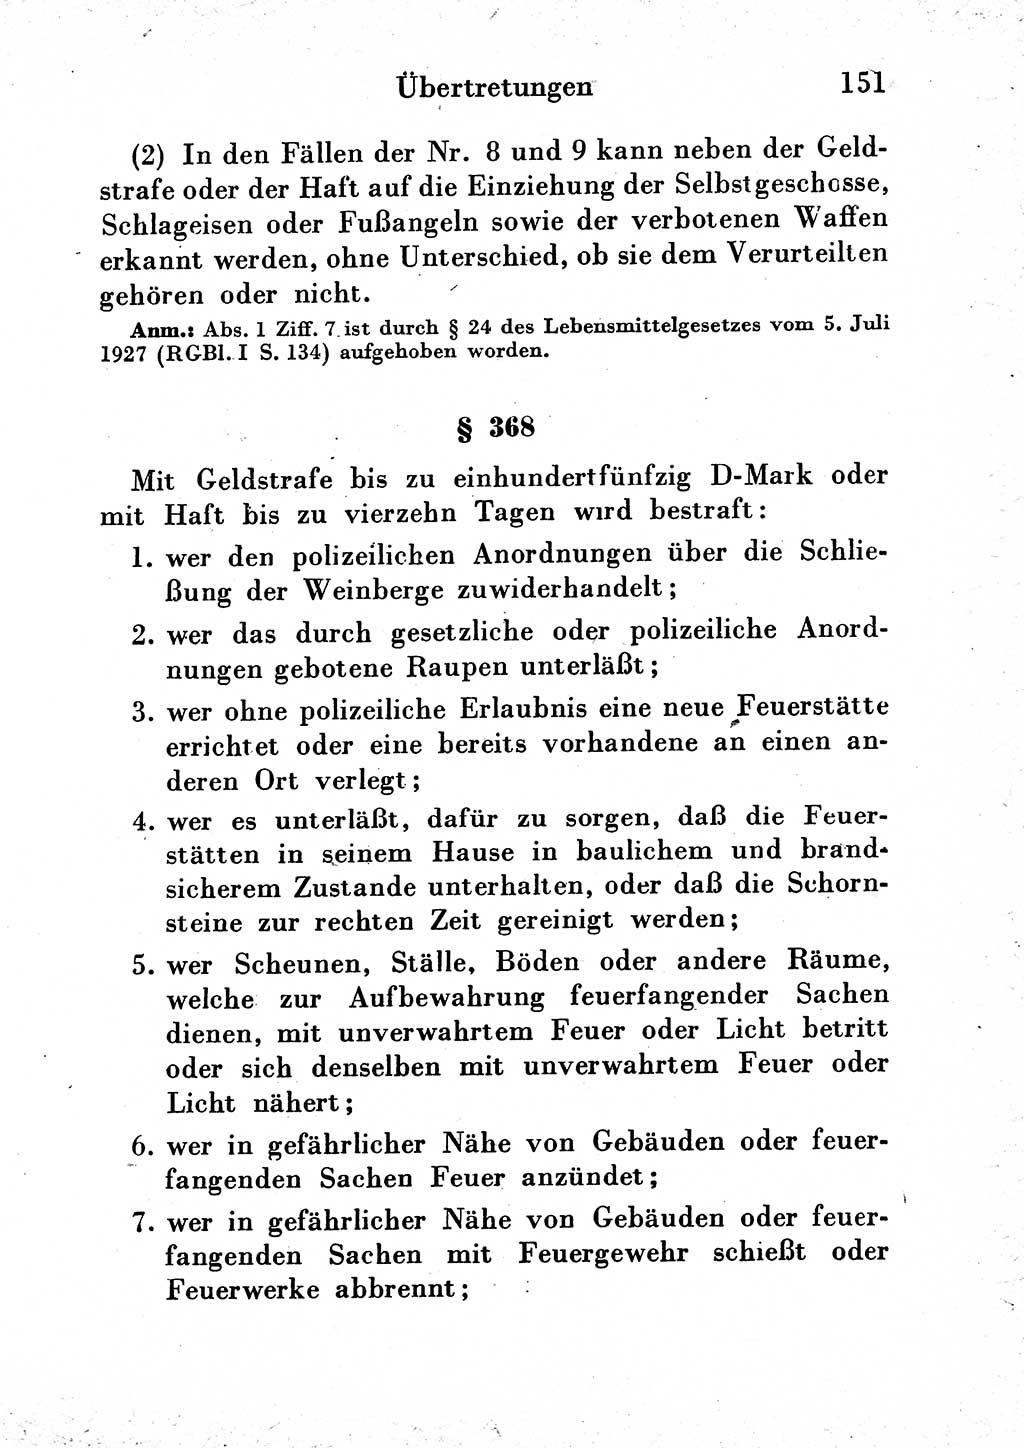 Strafgesetzbuch (StGB) und andere Strafgesetze [Deutsche Demokratische Republik (DDR)] 1954, Seite 151 (StGB Strafges. DDR 1954, S. 151)